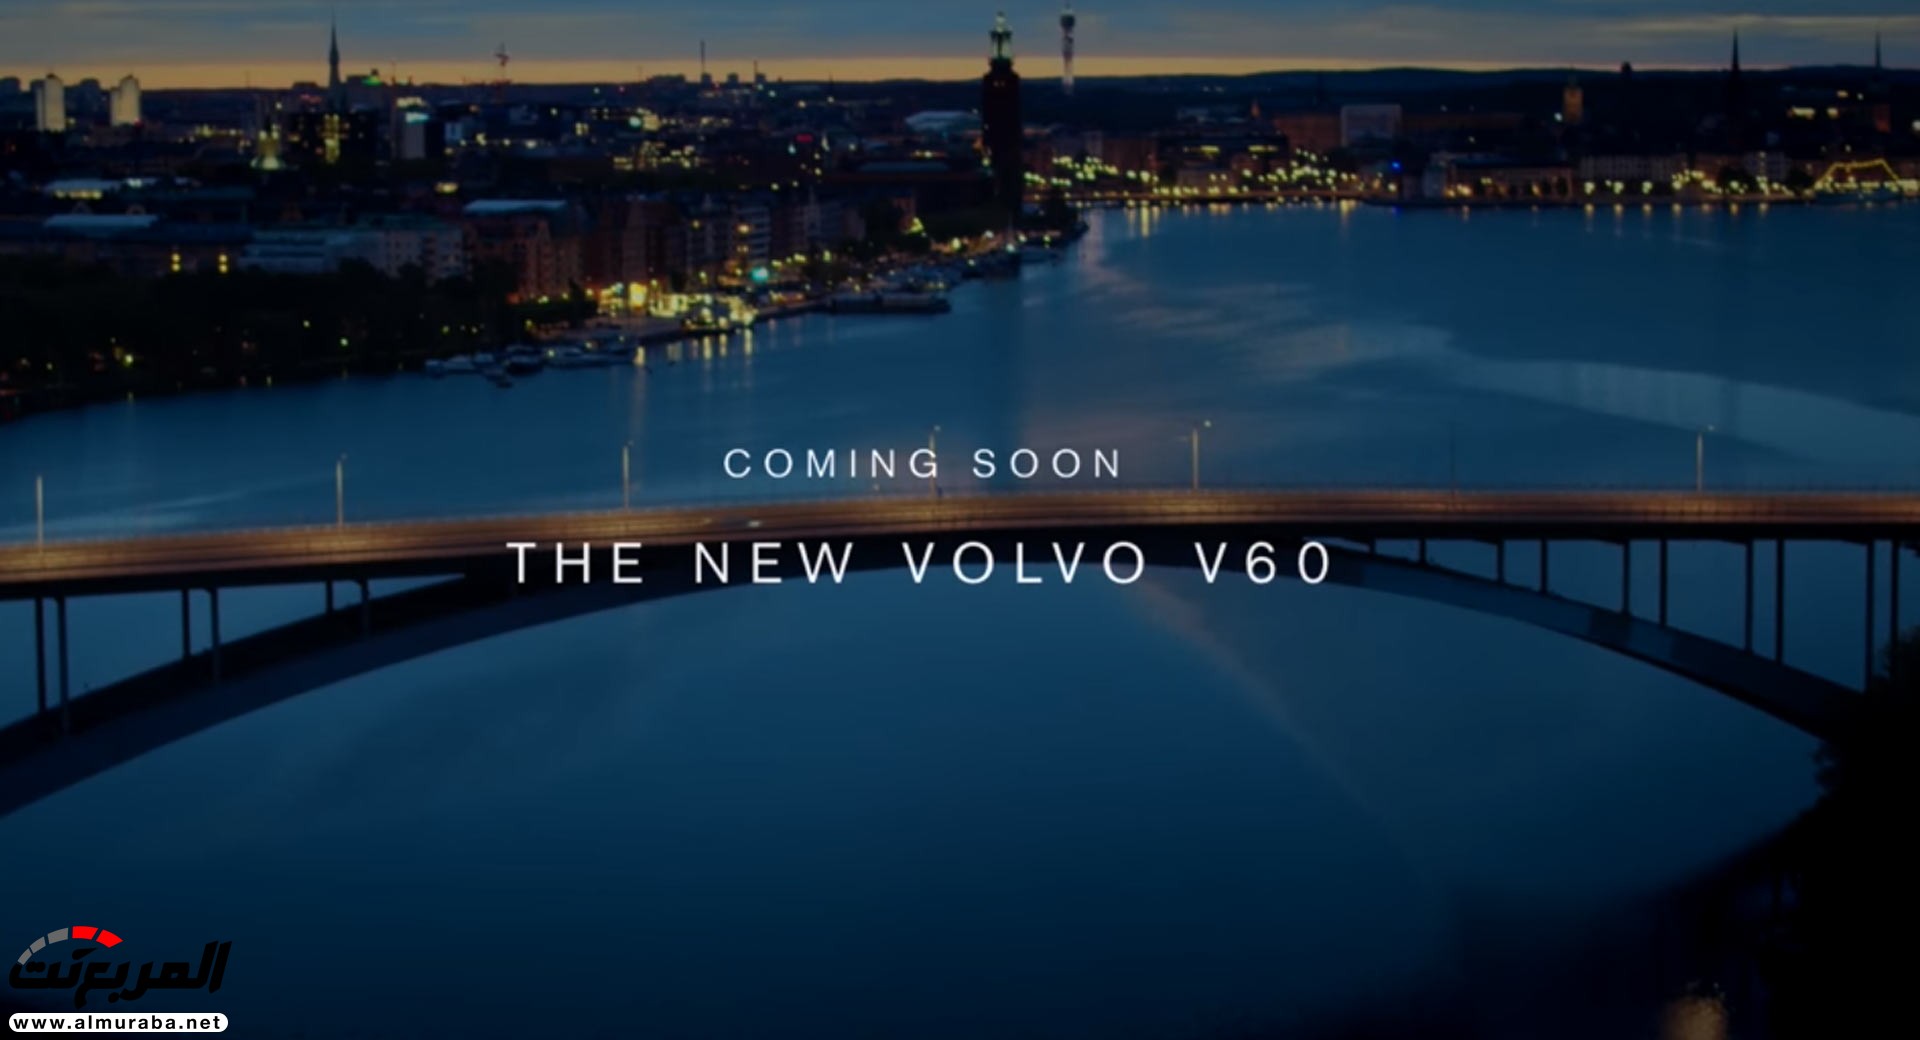 تسريب صور فولفو V60 2019 الجديدة كلياً قبل الكشف عنها رسمياً 2